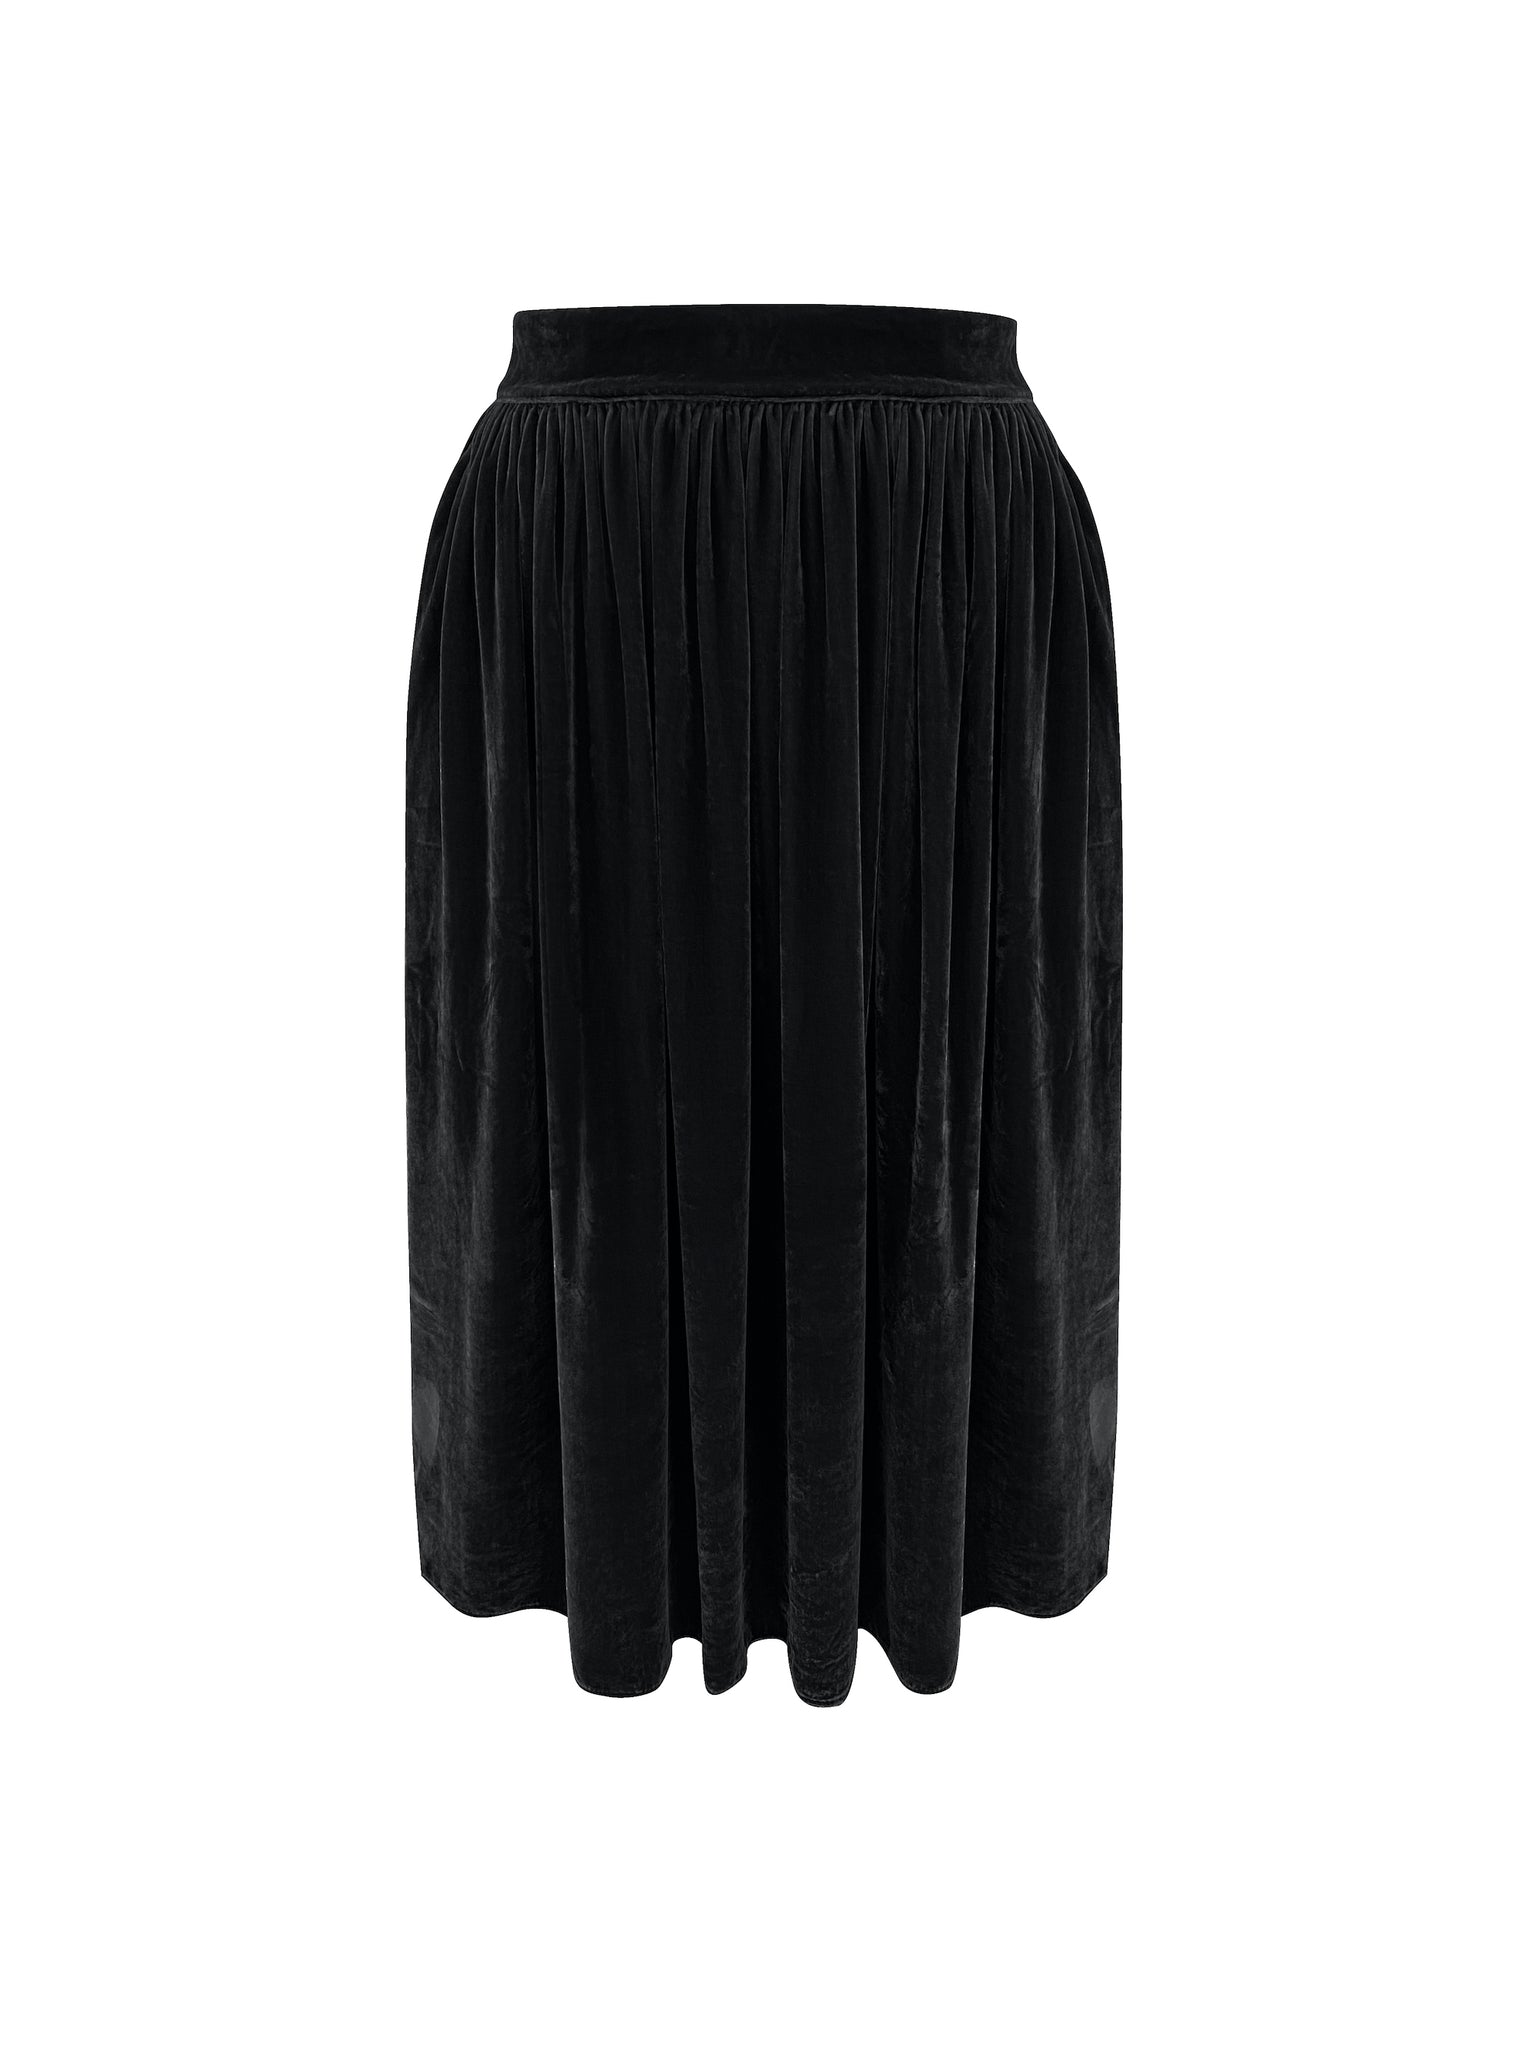 Black Velvet Skirt - GIANNETTI